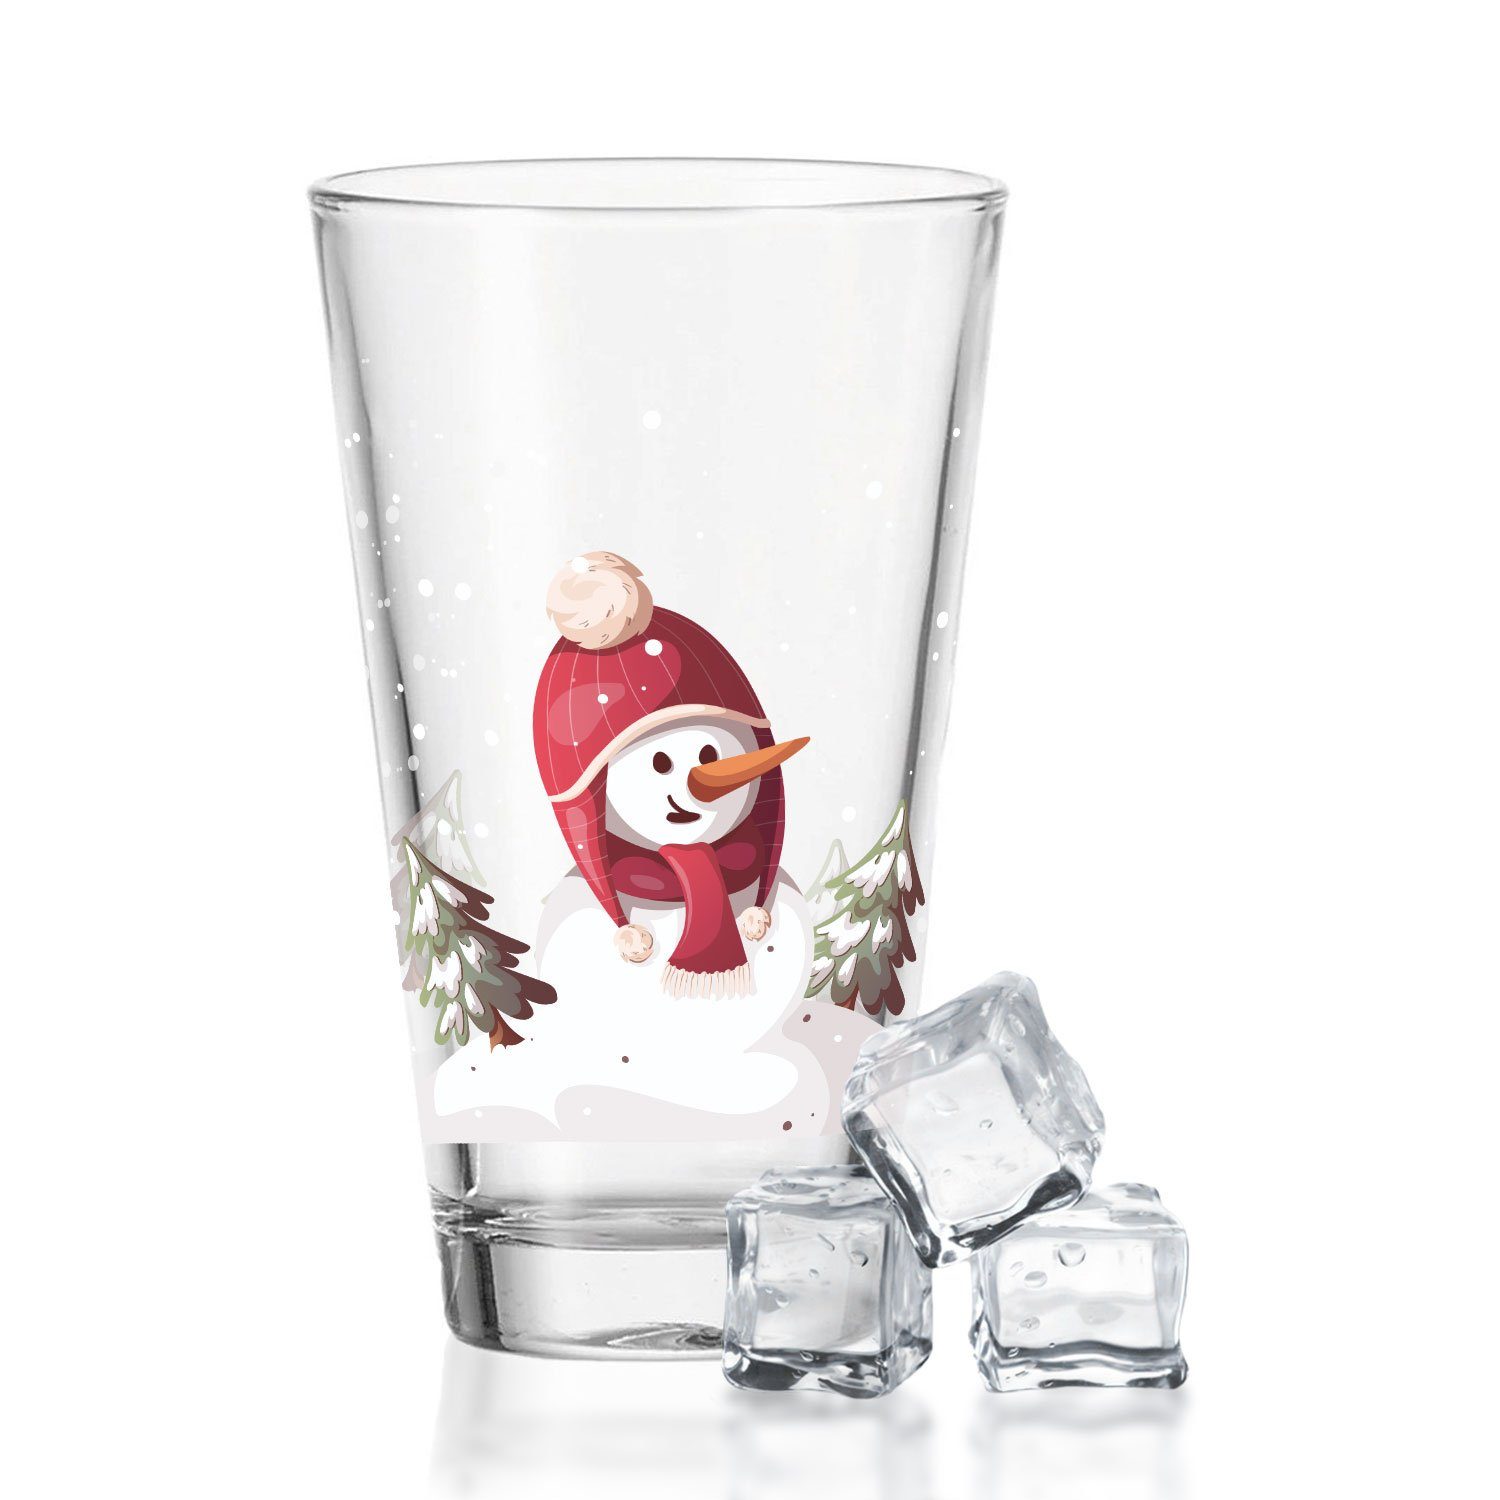 GRAVURZEILE Glas Weihnachtsmotiv Schneemann, Glas, Glas, Zur Weihnachtszeit zum Wichteln und als Geschenk für Kinder | Gläser